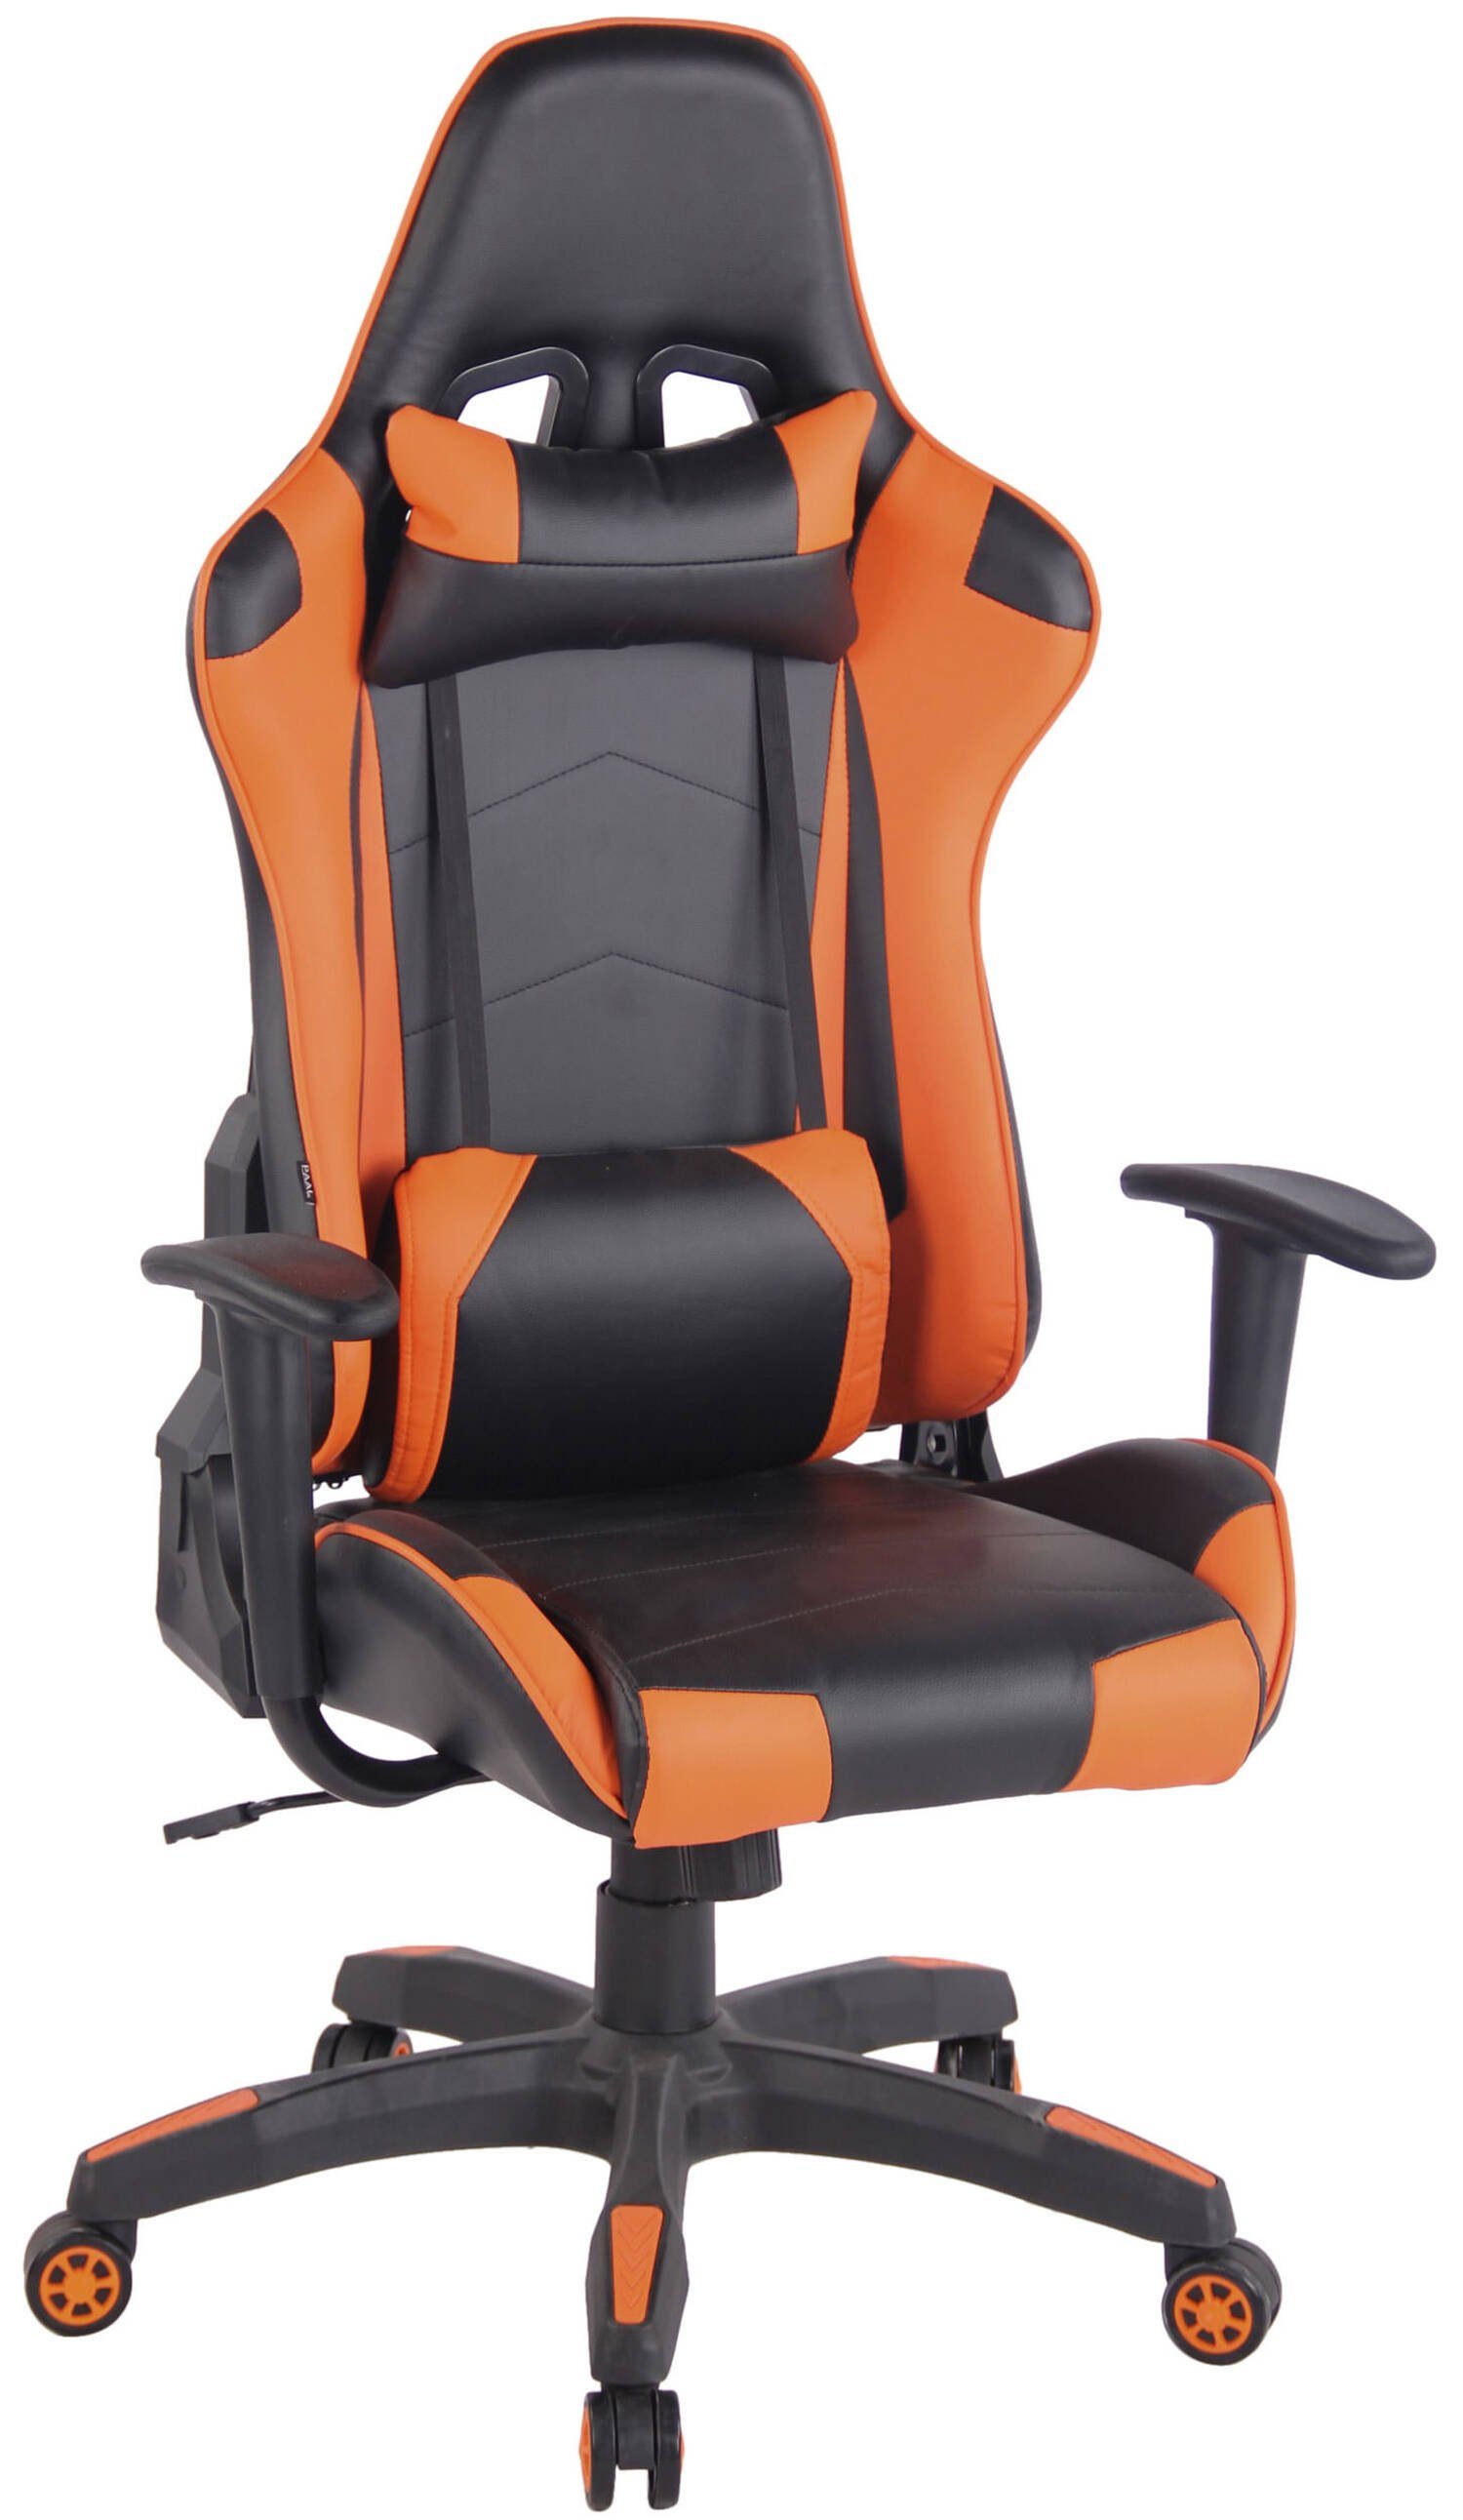 TPFLiving Gaming-Stuhl Mirage mit bequemer Rückenlehne - höhenverstellbar und 360° drehbar (Schreibtischstuhl, Drehstuhl, Gamingstuhl, Racingstuhl, Chefsessel), Gestell: Kunststoff schwarz - Sitzfläche: Kunstleder schwarz/orange